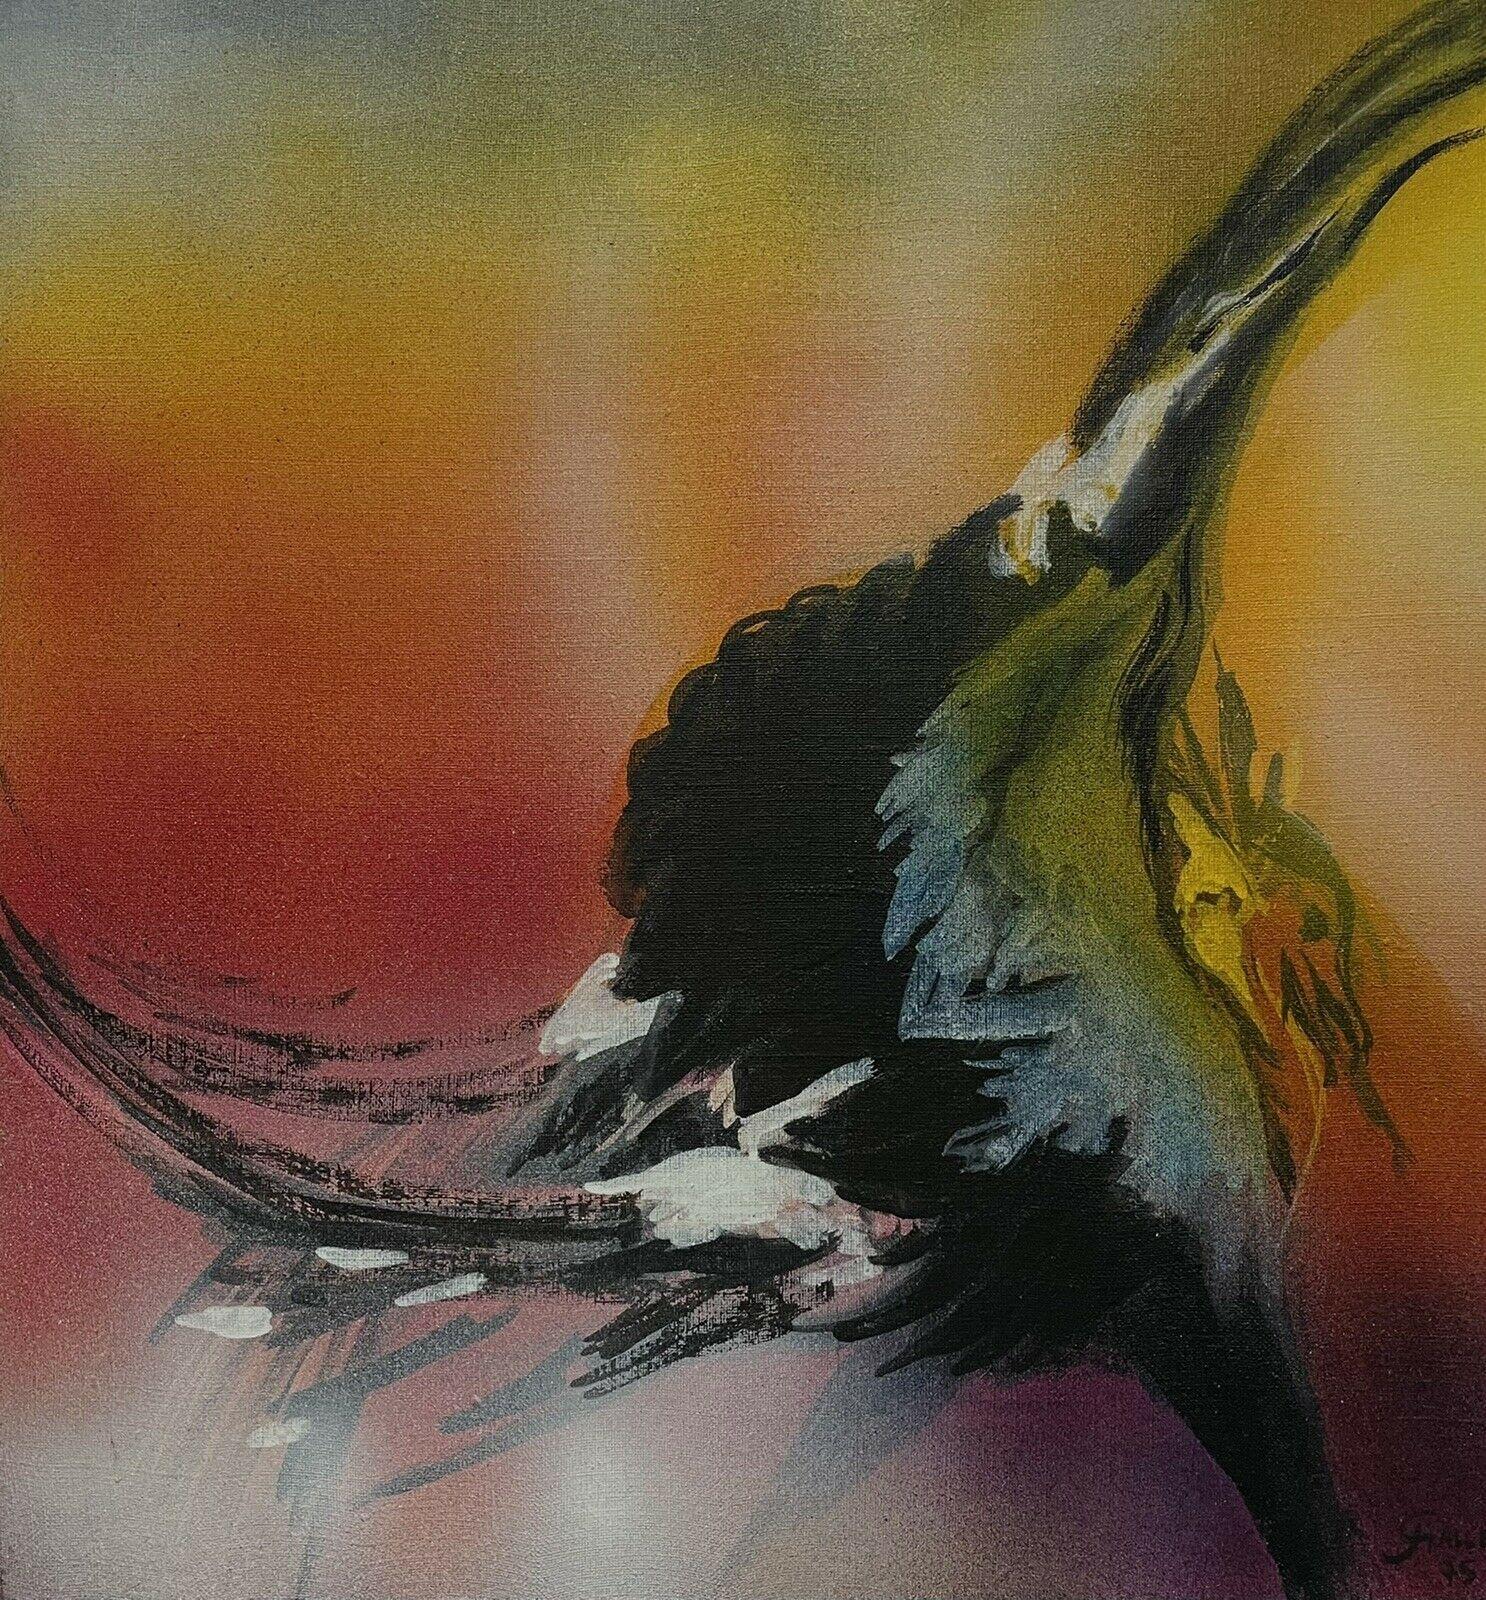 Französisches surrealistisches Fantasie-Ölgemälde, tanzender Vogel, orange-gelber Himmel (Surrealismus), Painting, von Josyne Gallet